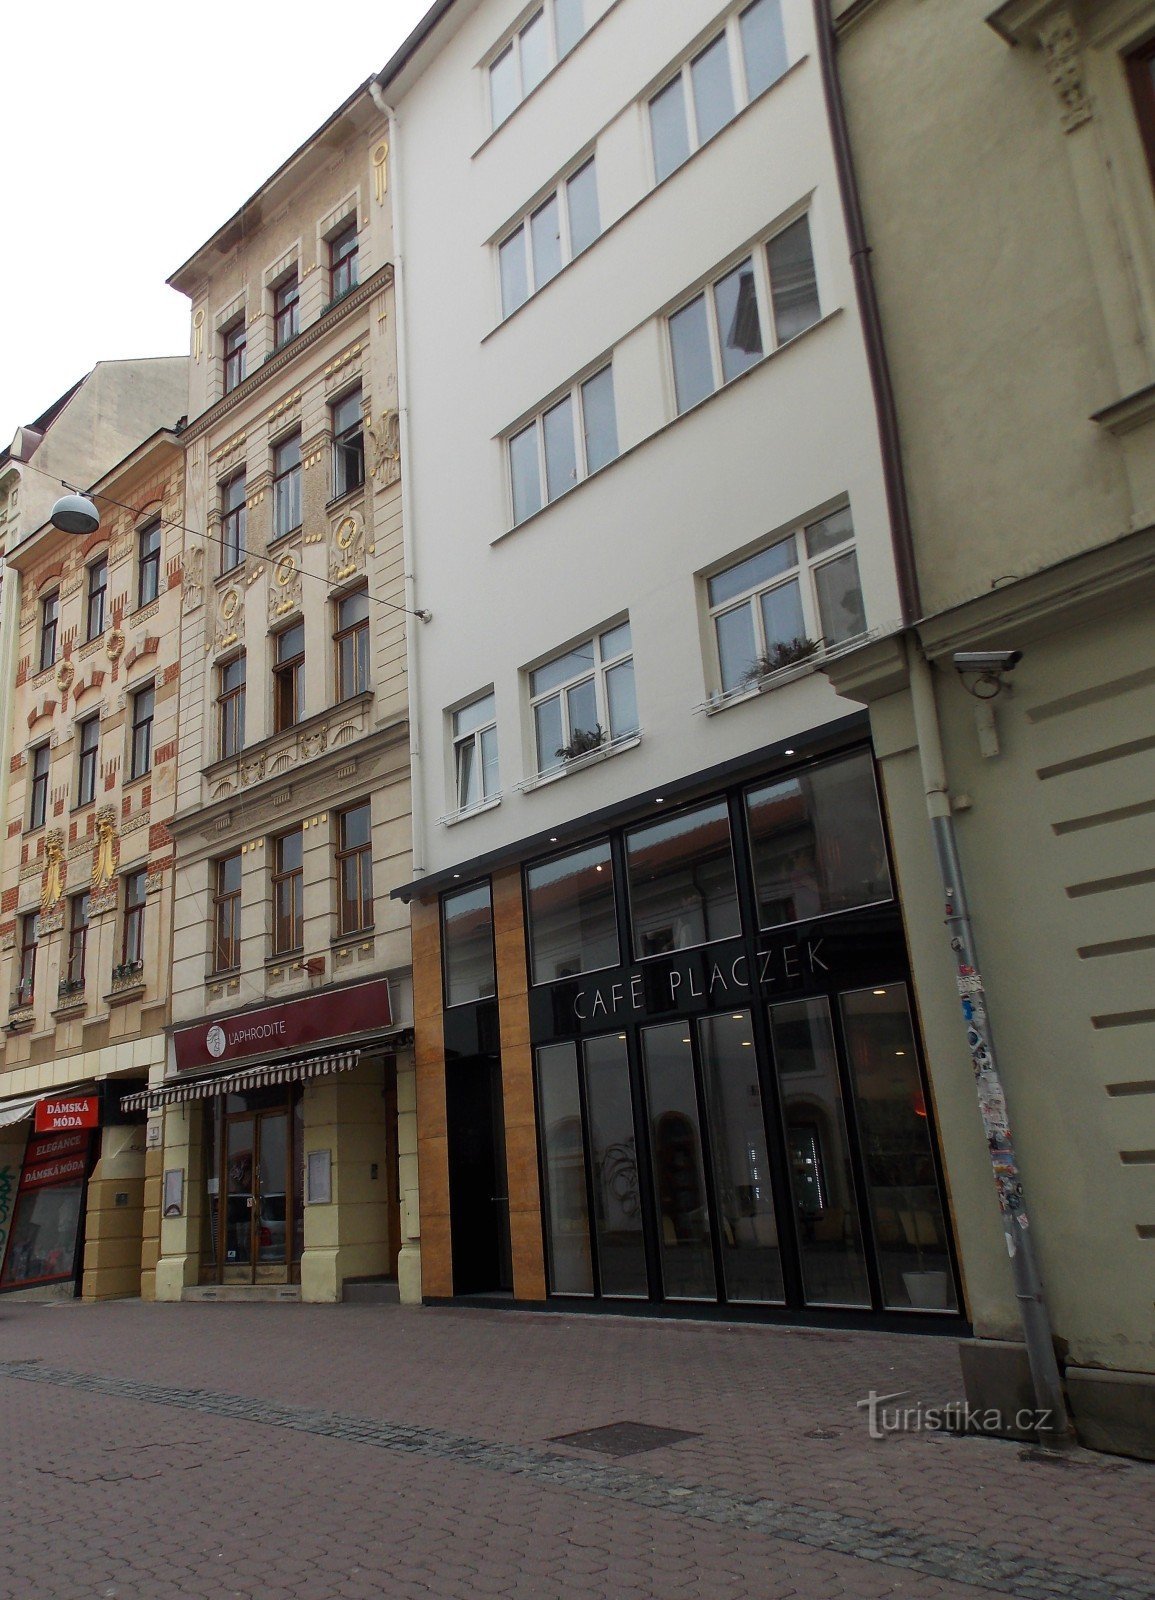 Easter Brno, la segunda ciudad más grande de la República Checa